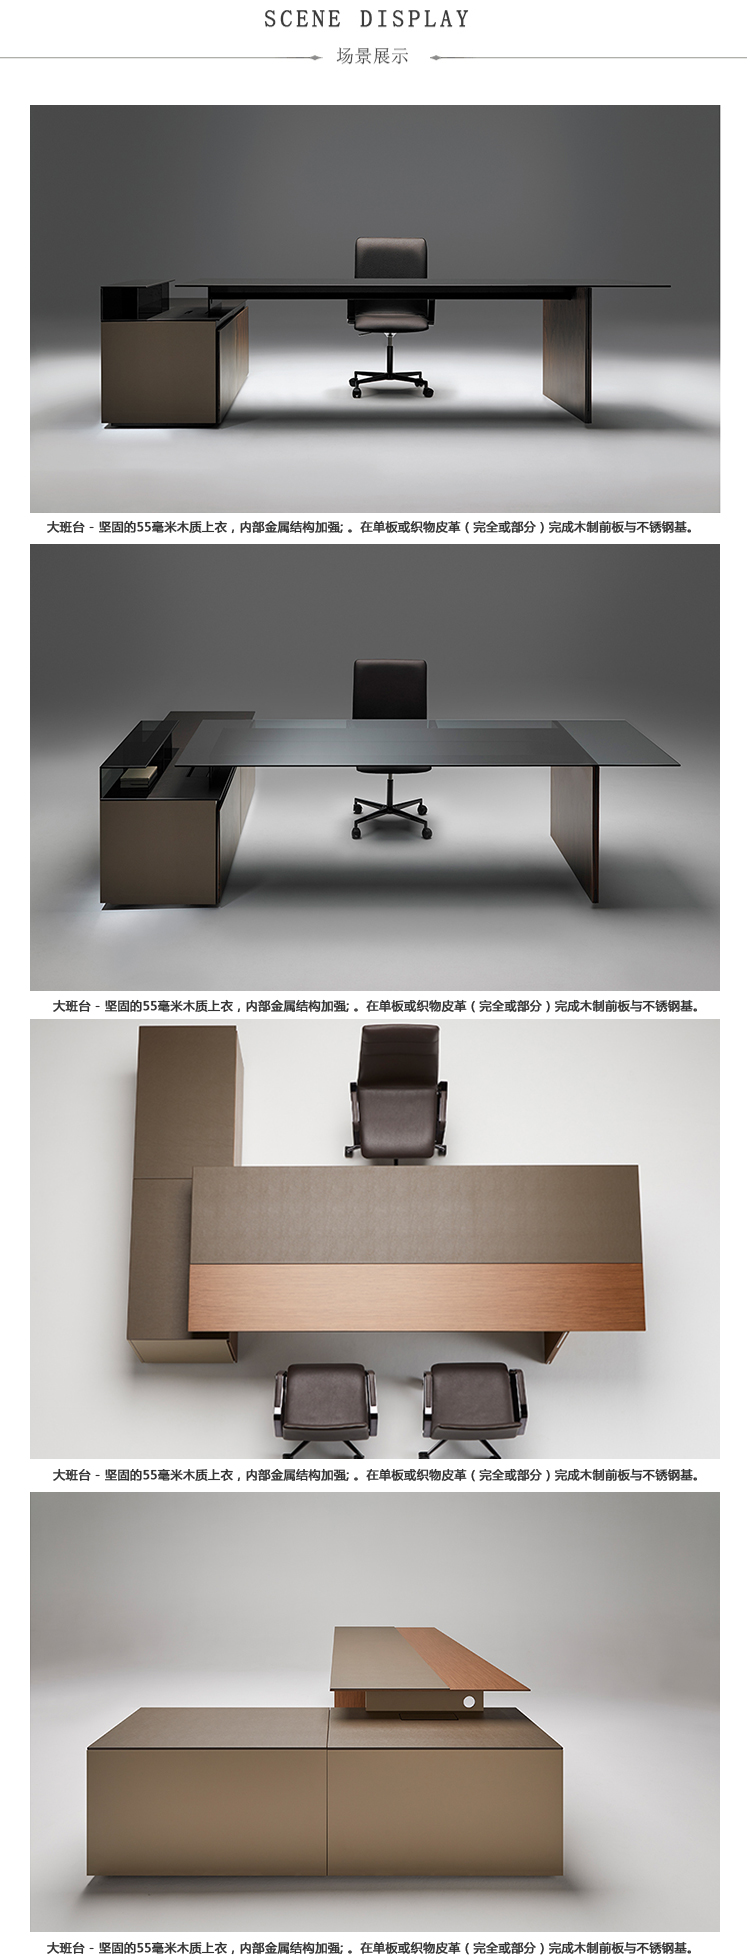 NEUTRA_大班台、HY-A1700-2产品详情|时尚大班桌|办公桌|办公家具